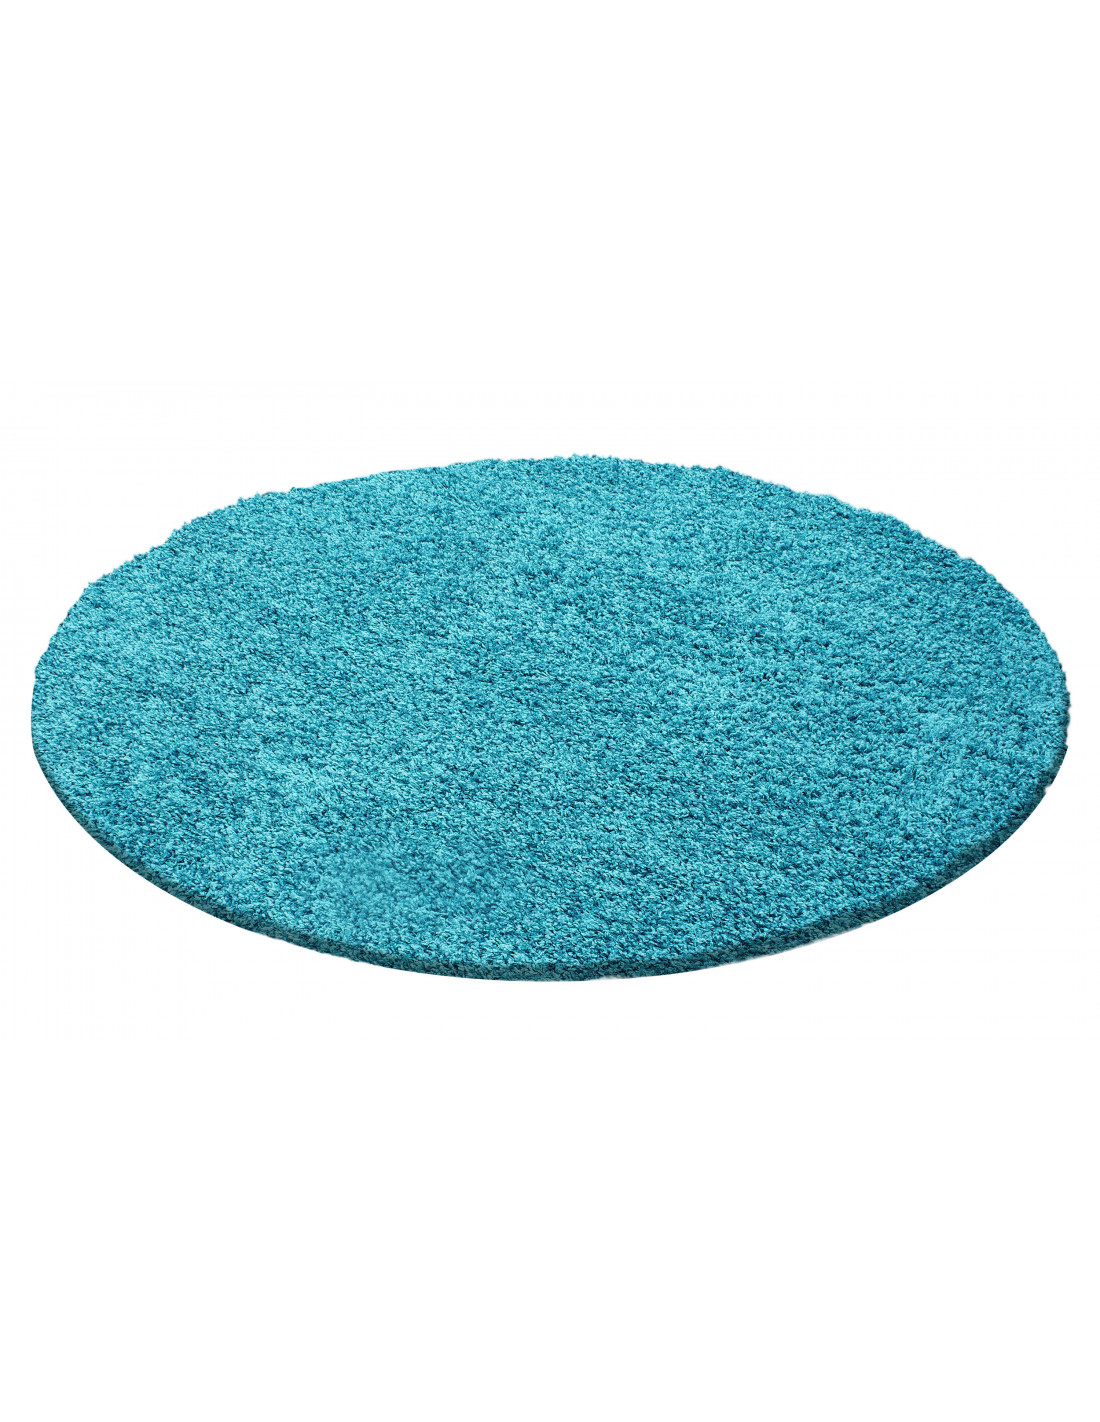 Hoogpolig tapijt, poolhoogte 3 cm, effen turkoois